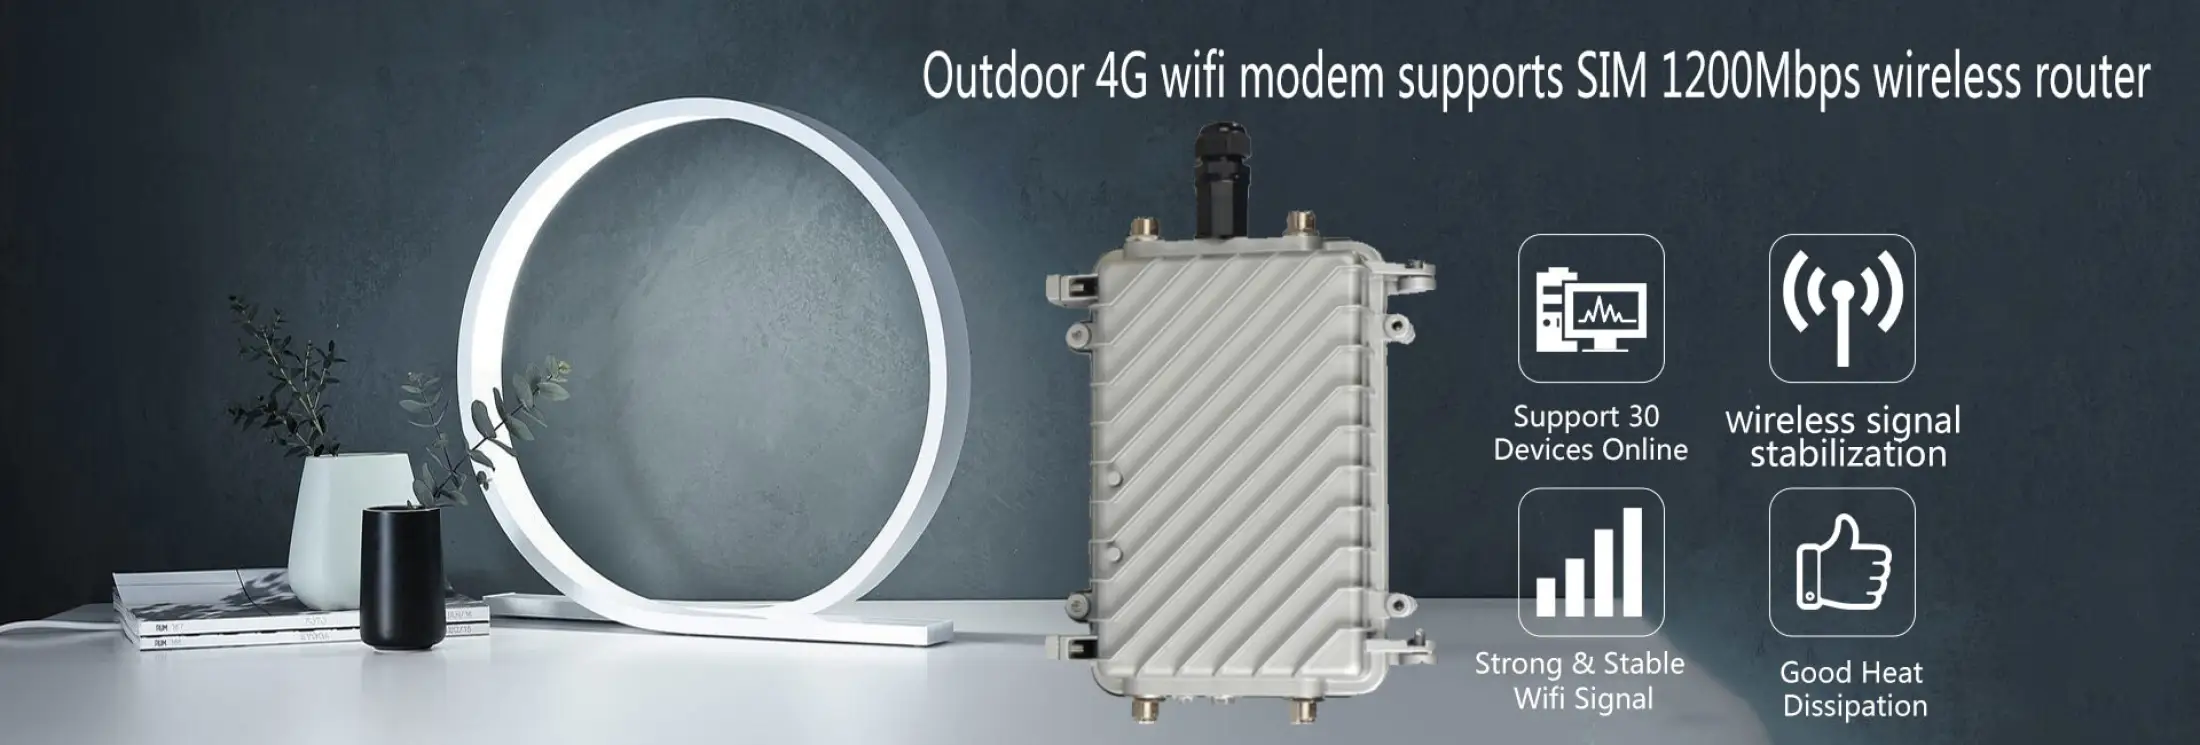 เกี่ยวกับสินค้า 4G เราเตอร์ ใส่ซิมปล่อย Wi-Fi 300Mbps 4G LTE sim card Wireless Router รองรับ 4G ทุกเครือข่าย รองรับการใช้งาน Wifi ได้พร้อมกัน 32 